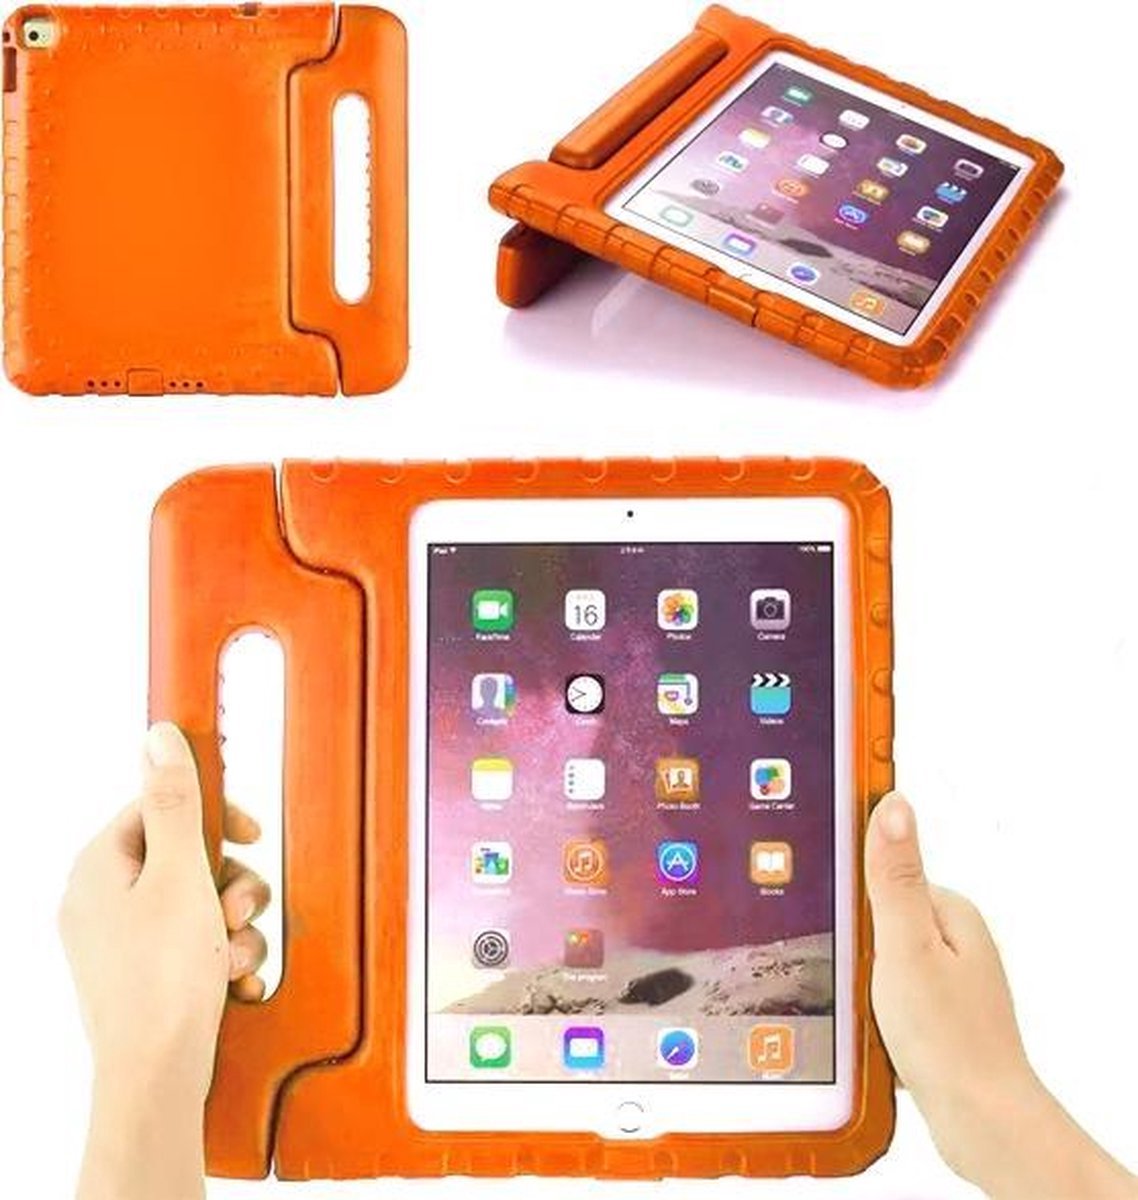 *** iPad Air 1 Compatibel Hoes - Valbescherming - Kids Proof - van Heble® ***